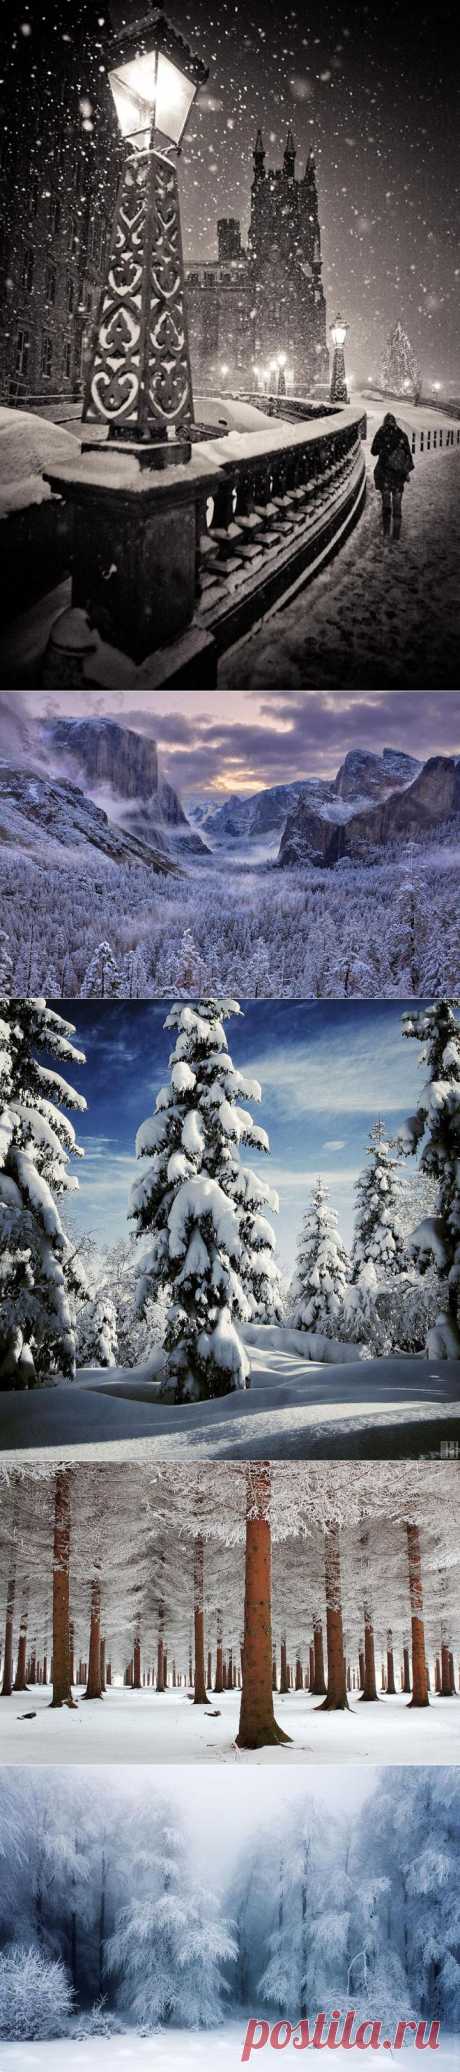 20 захватывающих фотографий зимних пейзажей | Дачный участок